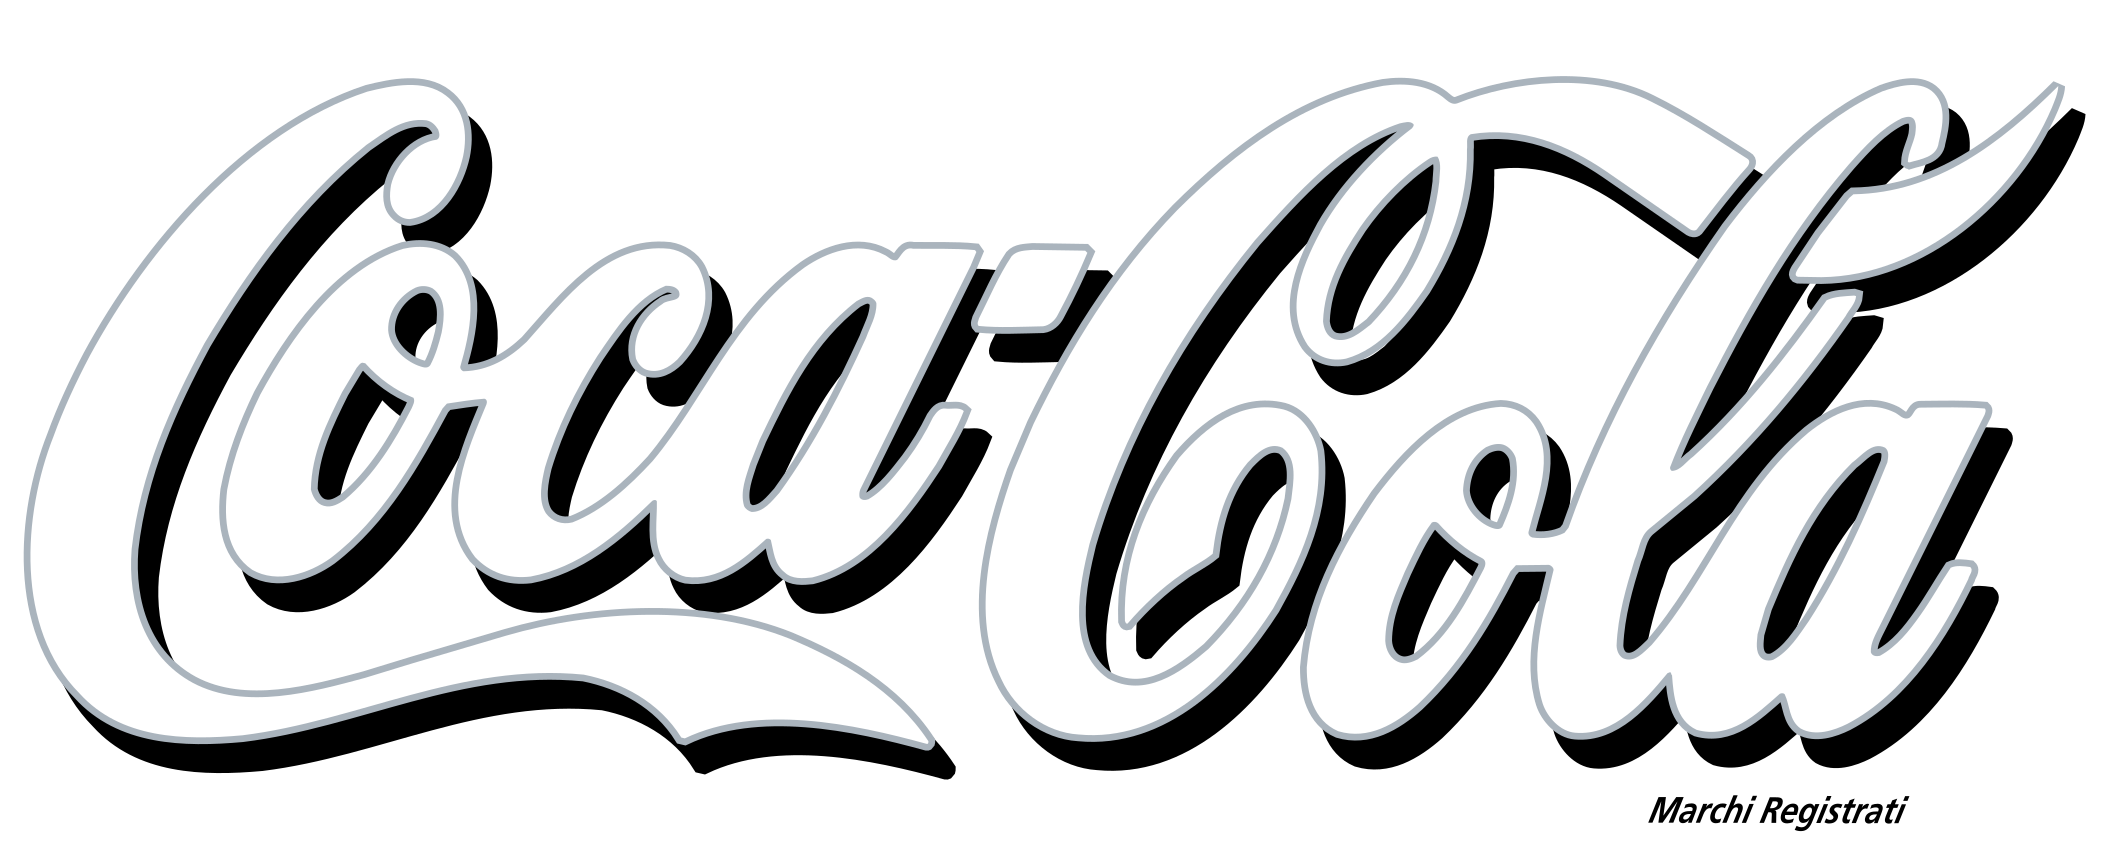 Coca cola logotipo PNG Baixar imagem